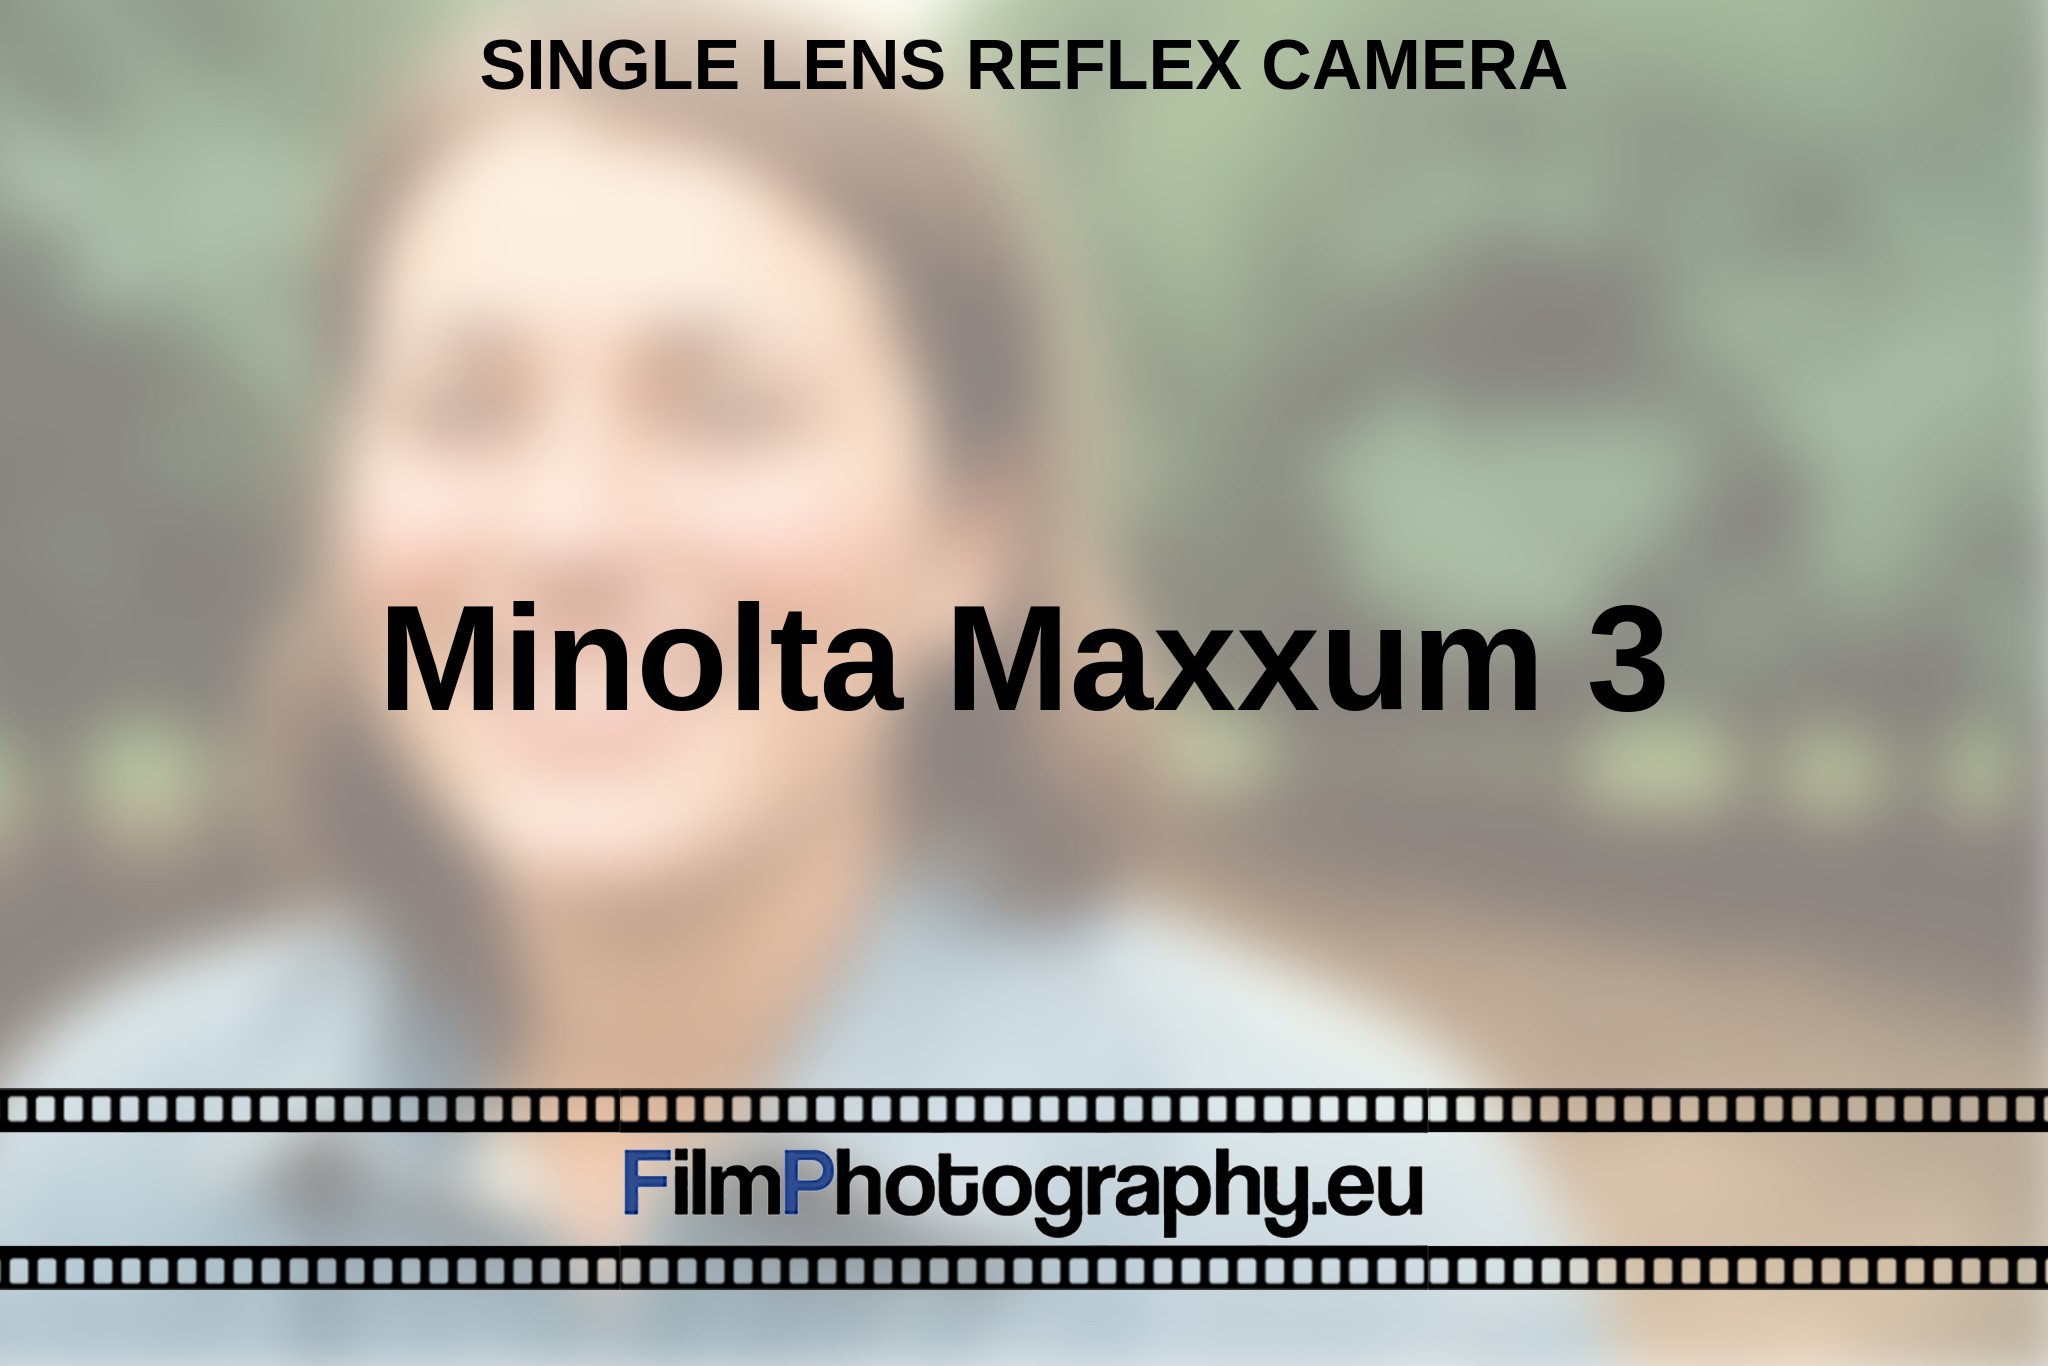 minolta-maxxum-3-single-lens-reflex-camera-en-bnv.jpg